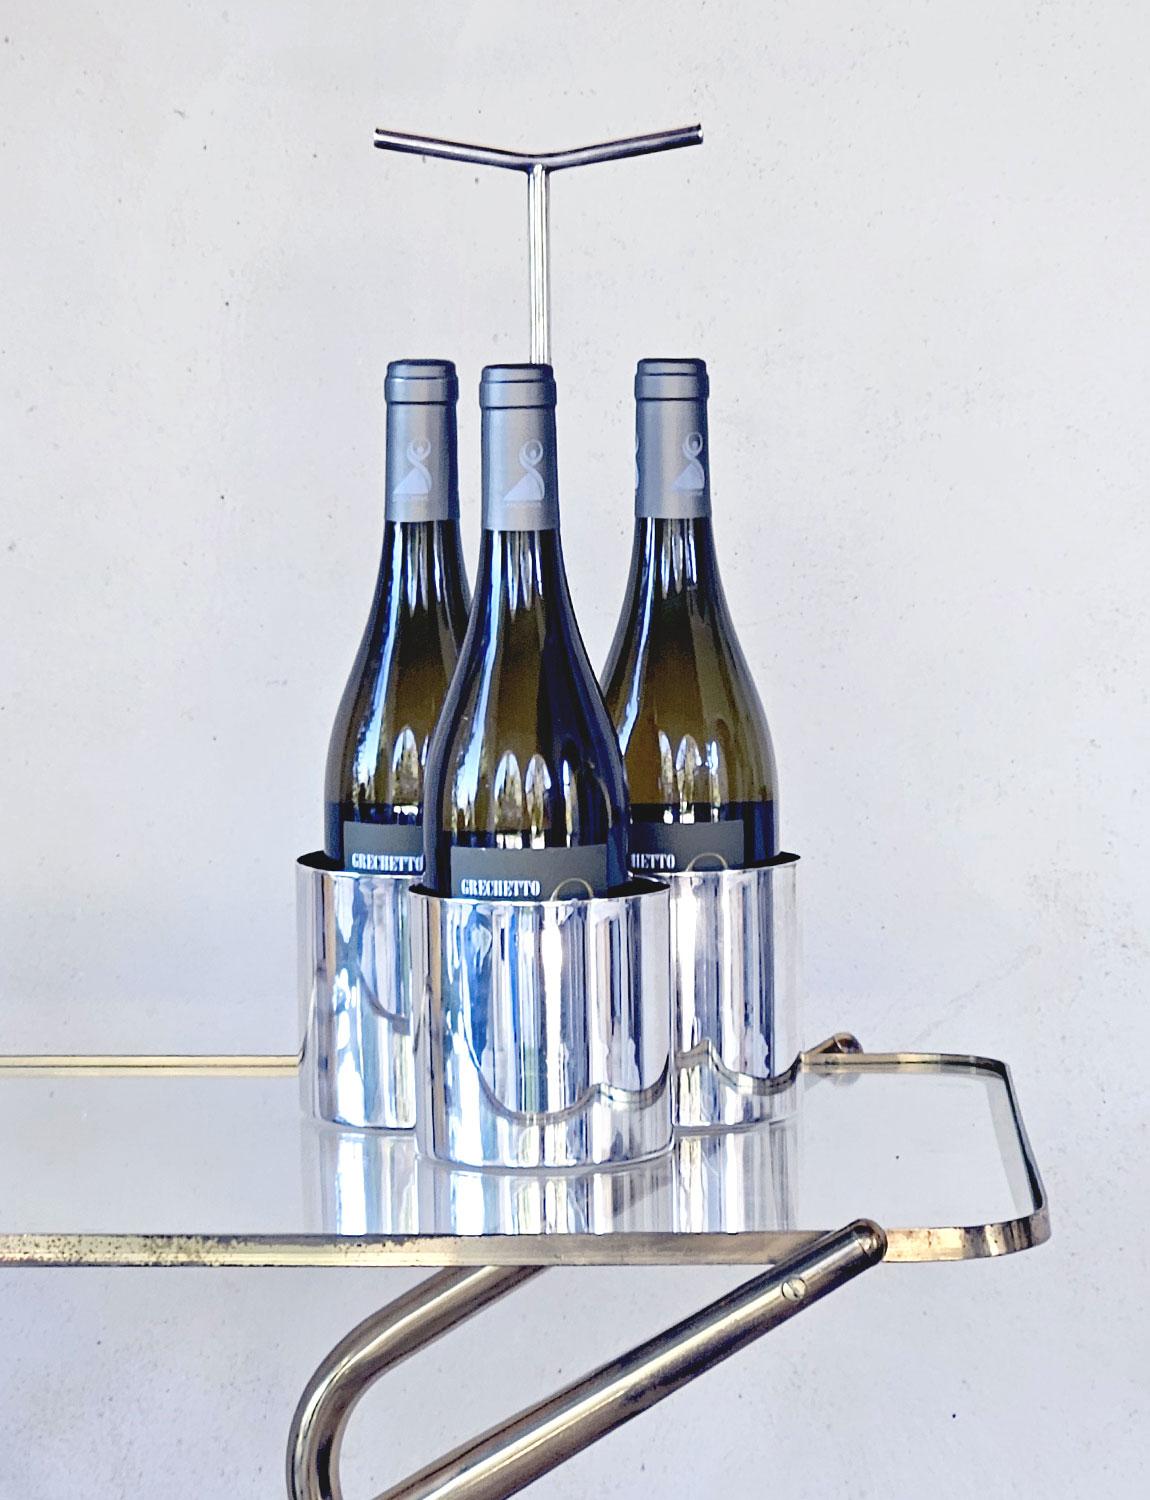 Dreifacher Weinflaschenhalter aus geprägtem Silber von Lino Sabattini für Cristofle aus den 1960er Jahren. Der Halter fasst drei Flaschen und hat einen eleganten Griff. Sabattini war der berühmte italienische Silberkünstler der 1960er Jahre, der für